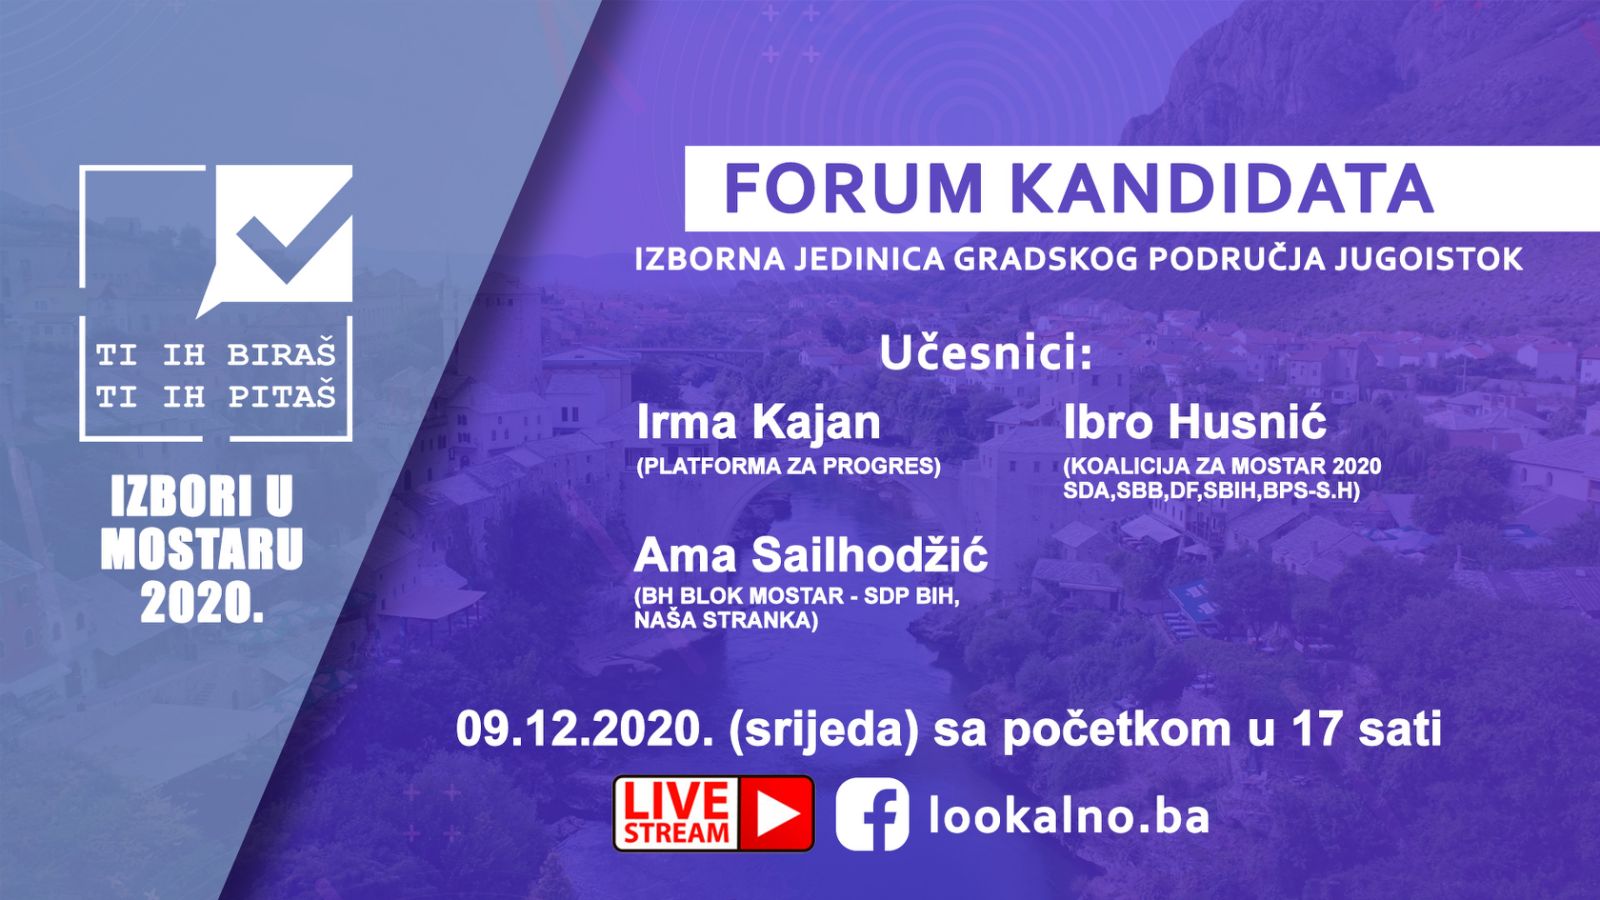 Forum kandidata za Gradsko vijeće u Mostaru za izbornu jedinicu Jugoistok